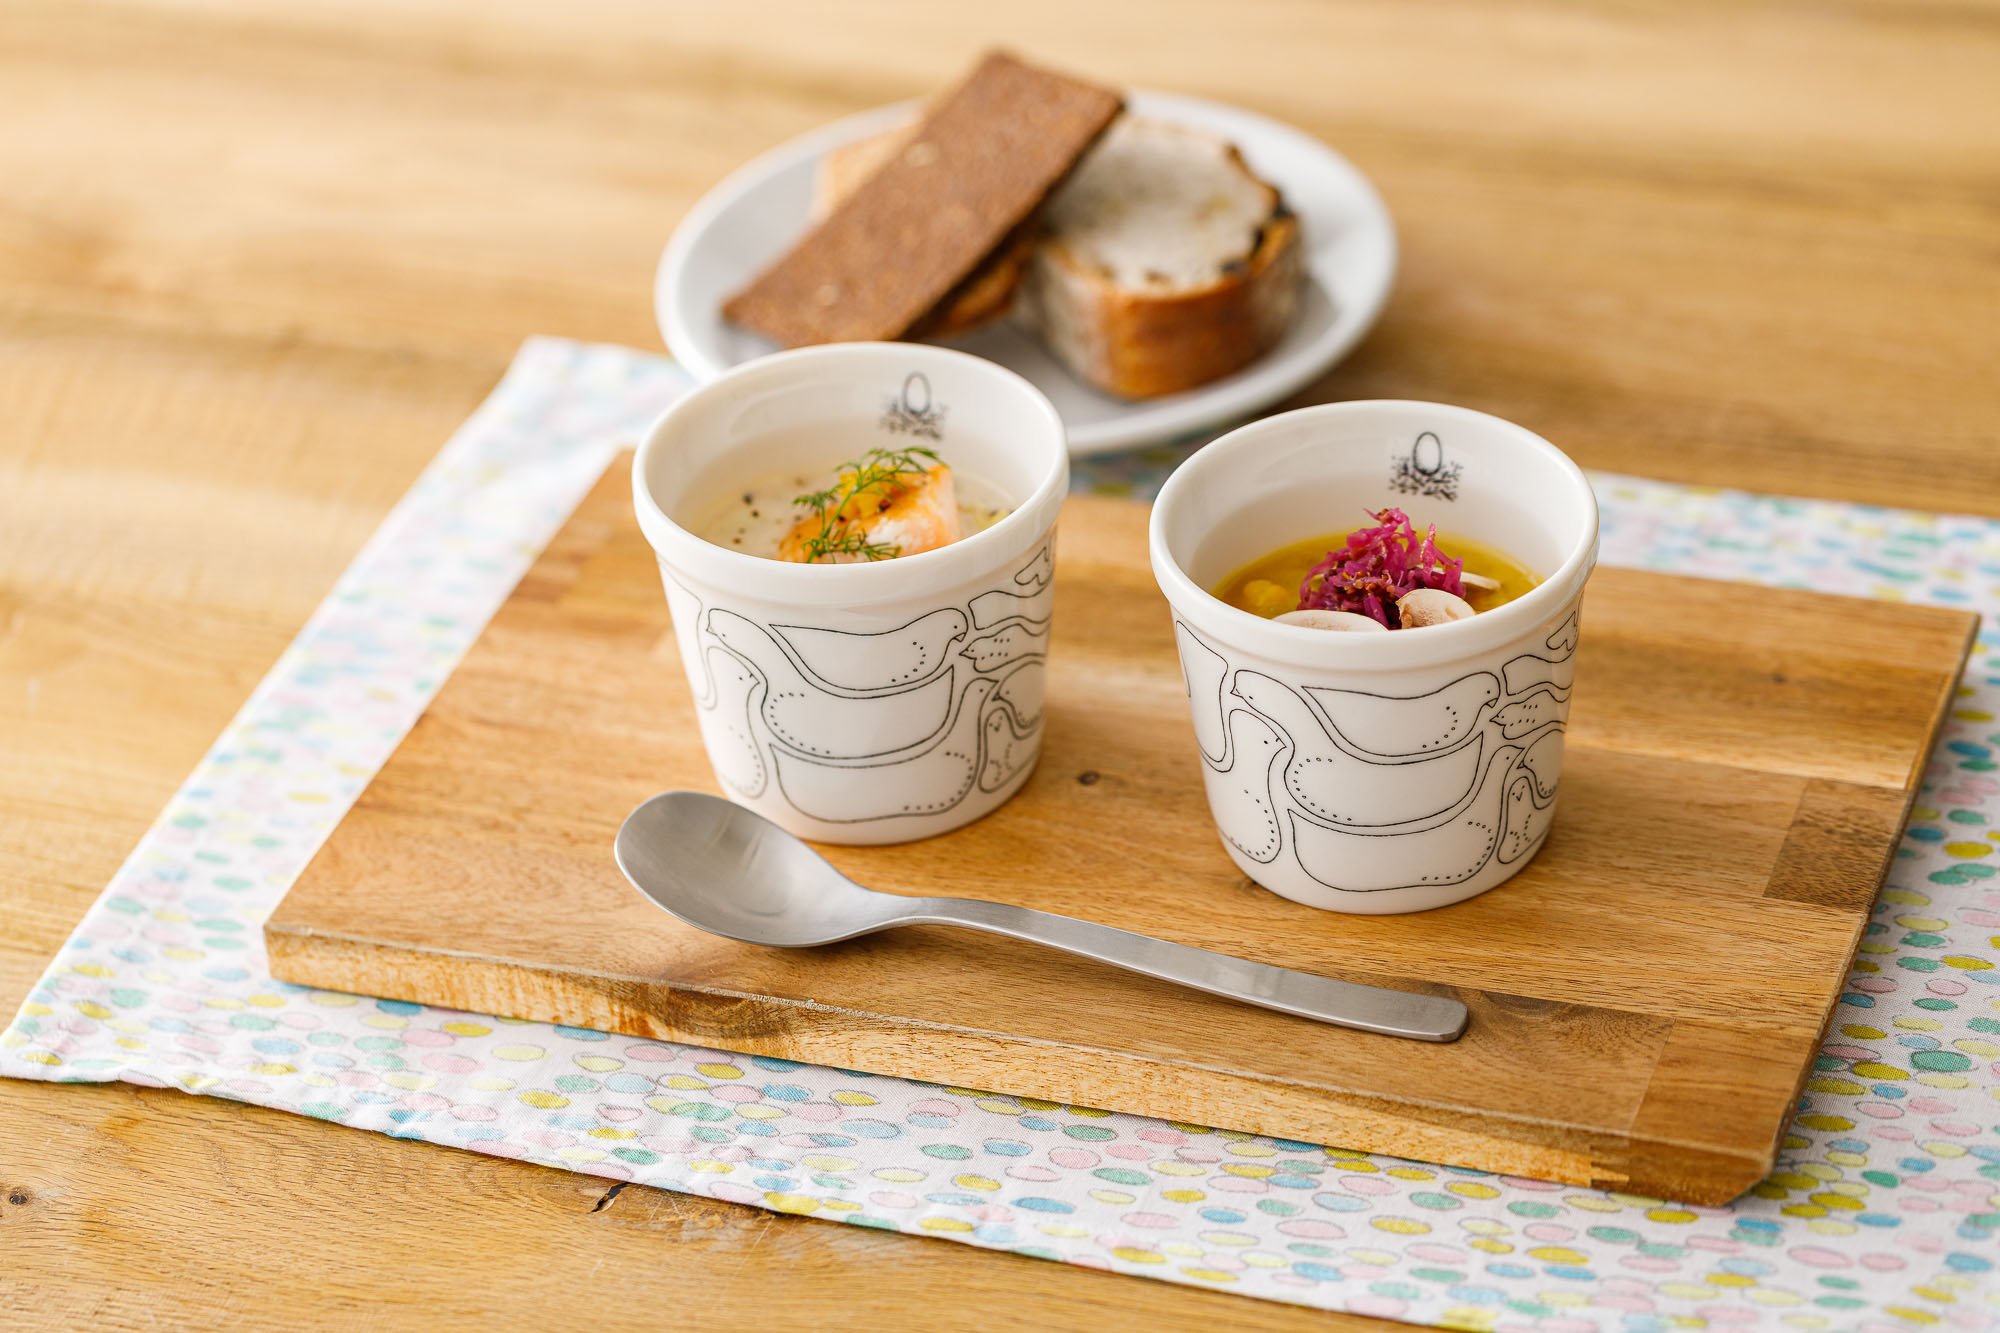 Soup Stock Tokyo と minä perhonen がコラボレーション、オリジナルのスープと器で食卓を彩ります。｜株式会社 スープストックトーキョーのプレスリリース